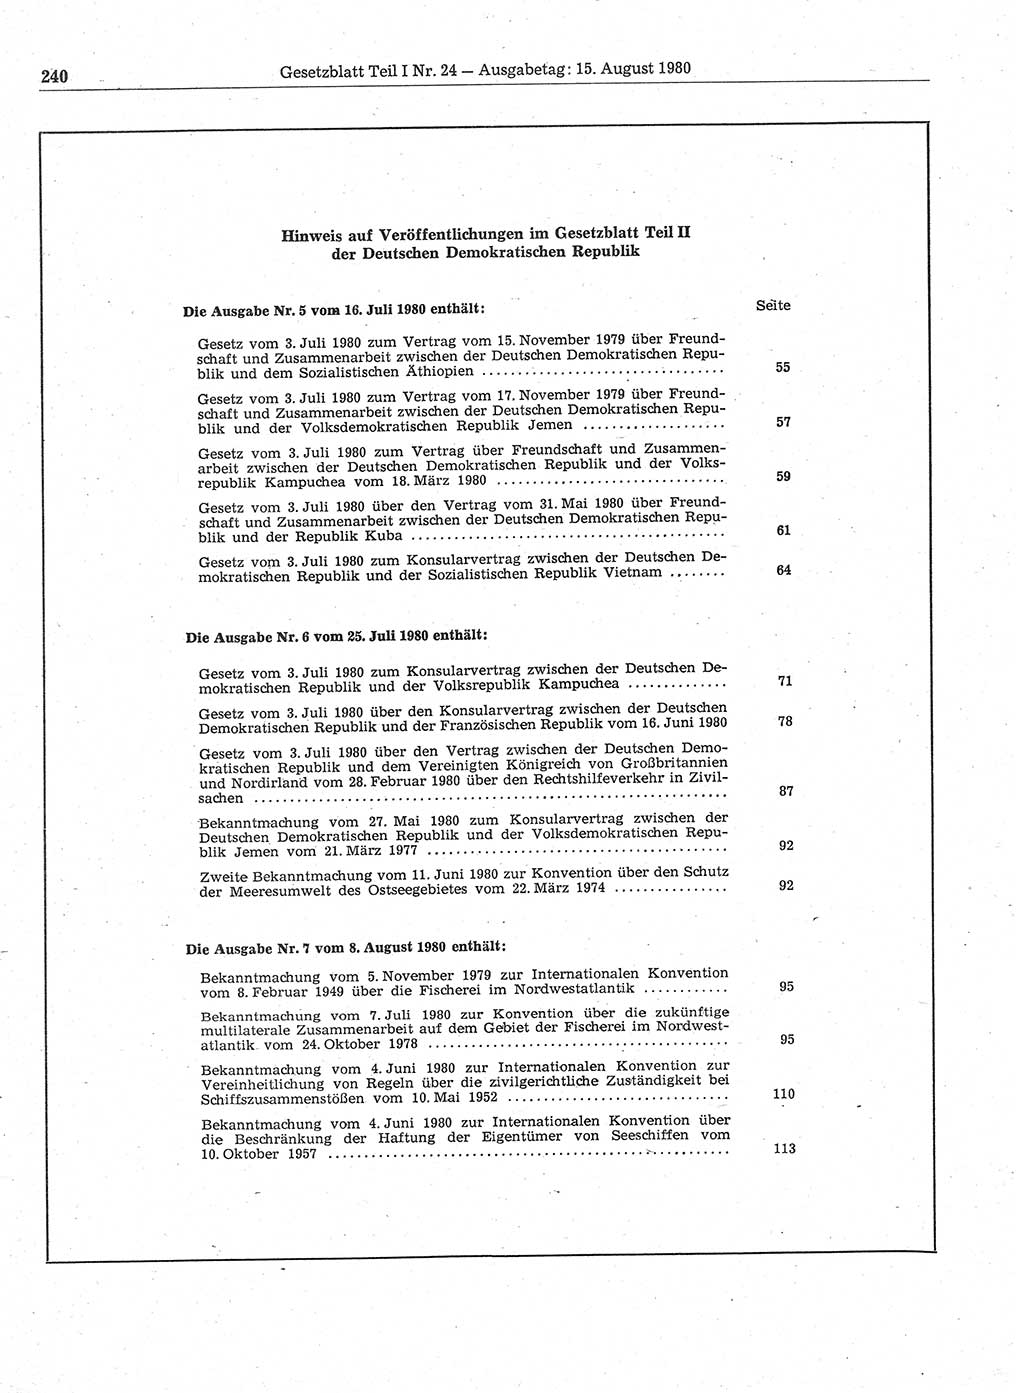 Gesetzblatt (GBl.) der Deutschen Demokratischen Republik (DDR) Teil Ⅰ 1980, Seite 240 (GBl. DDR Ⅰ 1980, S. 240)